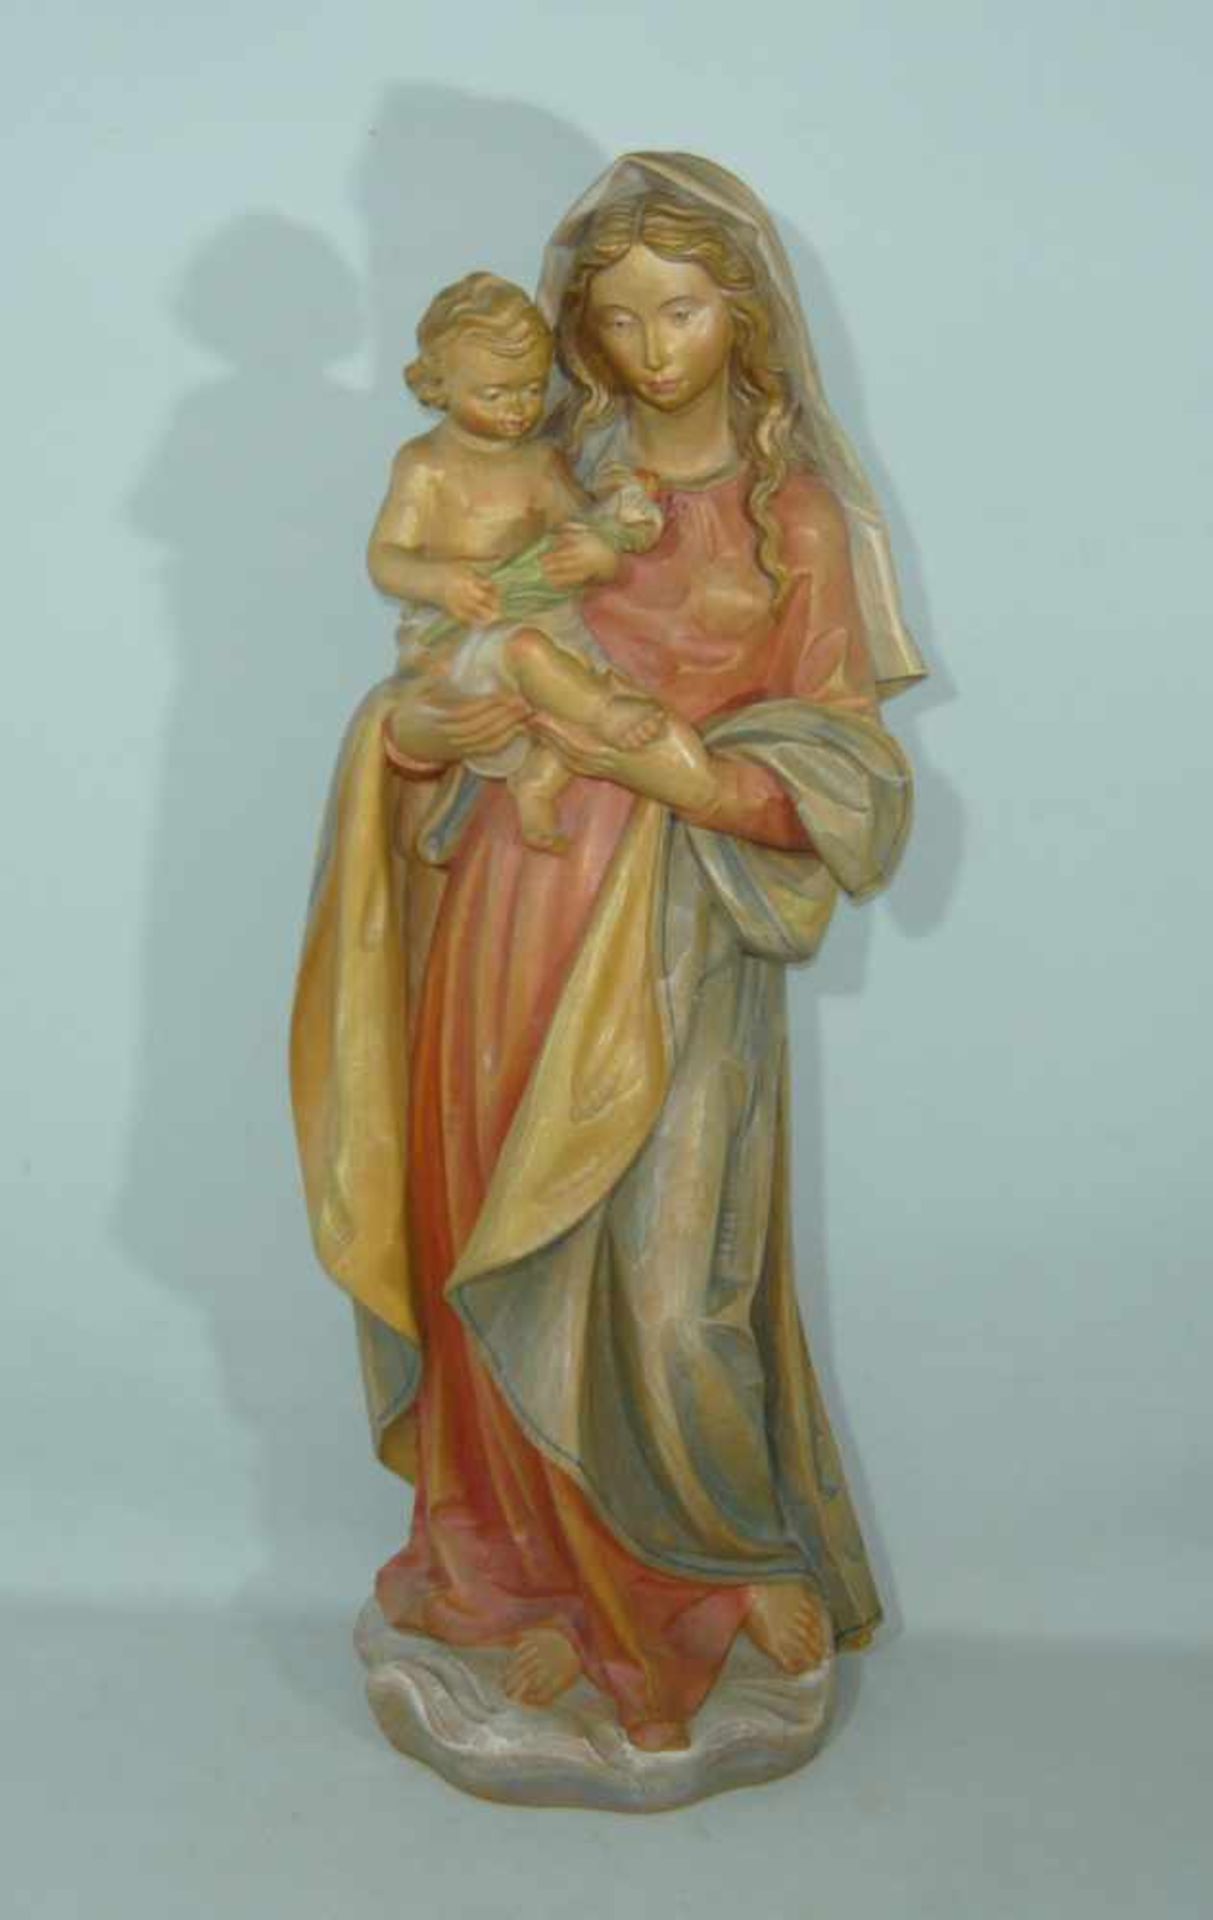 Große Holzschnitzerei. Darstellung der Maria mit Jesuskind. Holz, farbig in zarten Tönen gefasst.